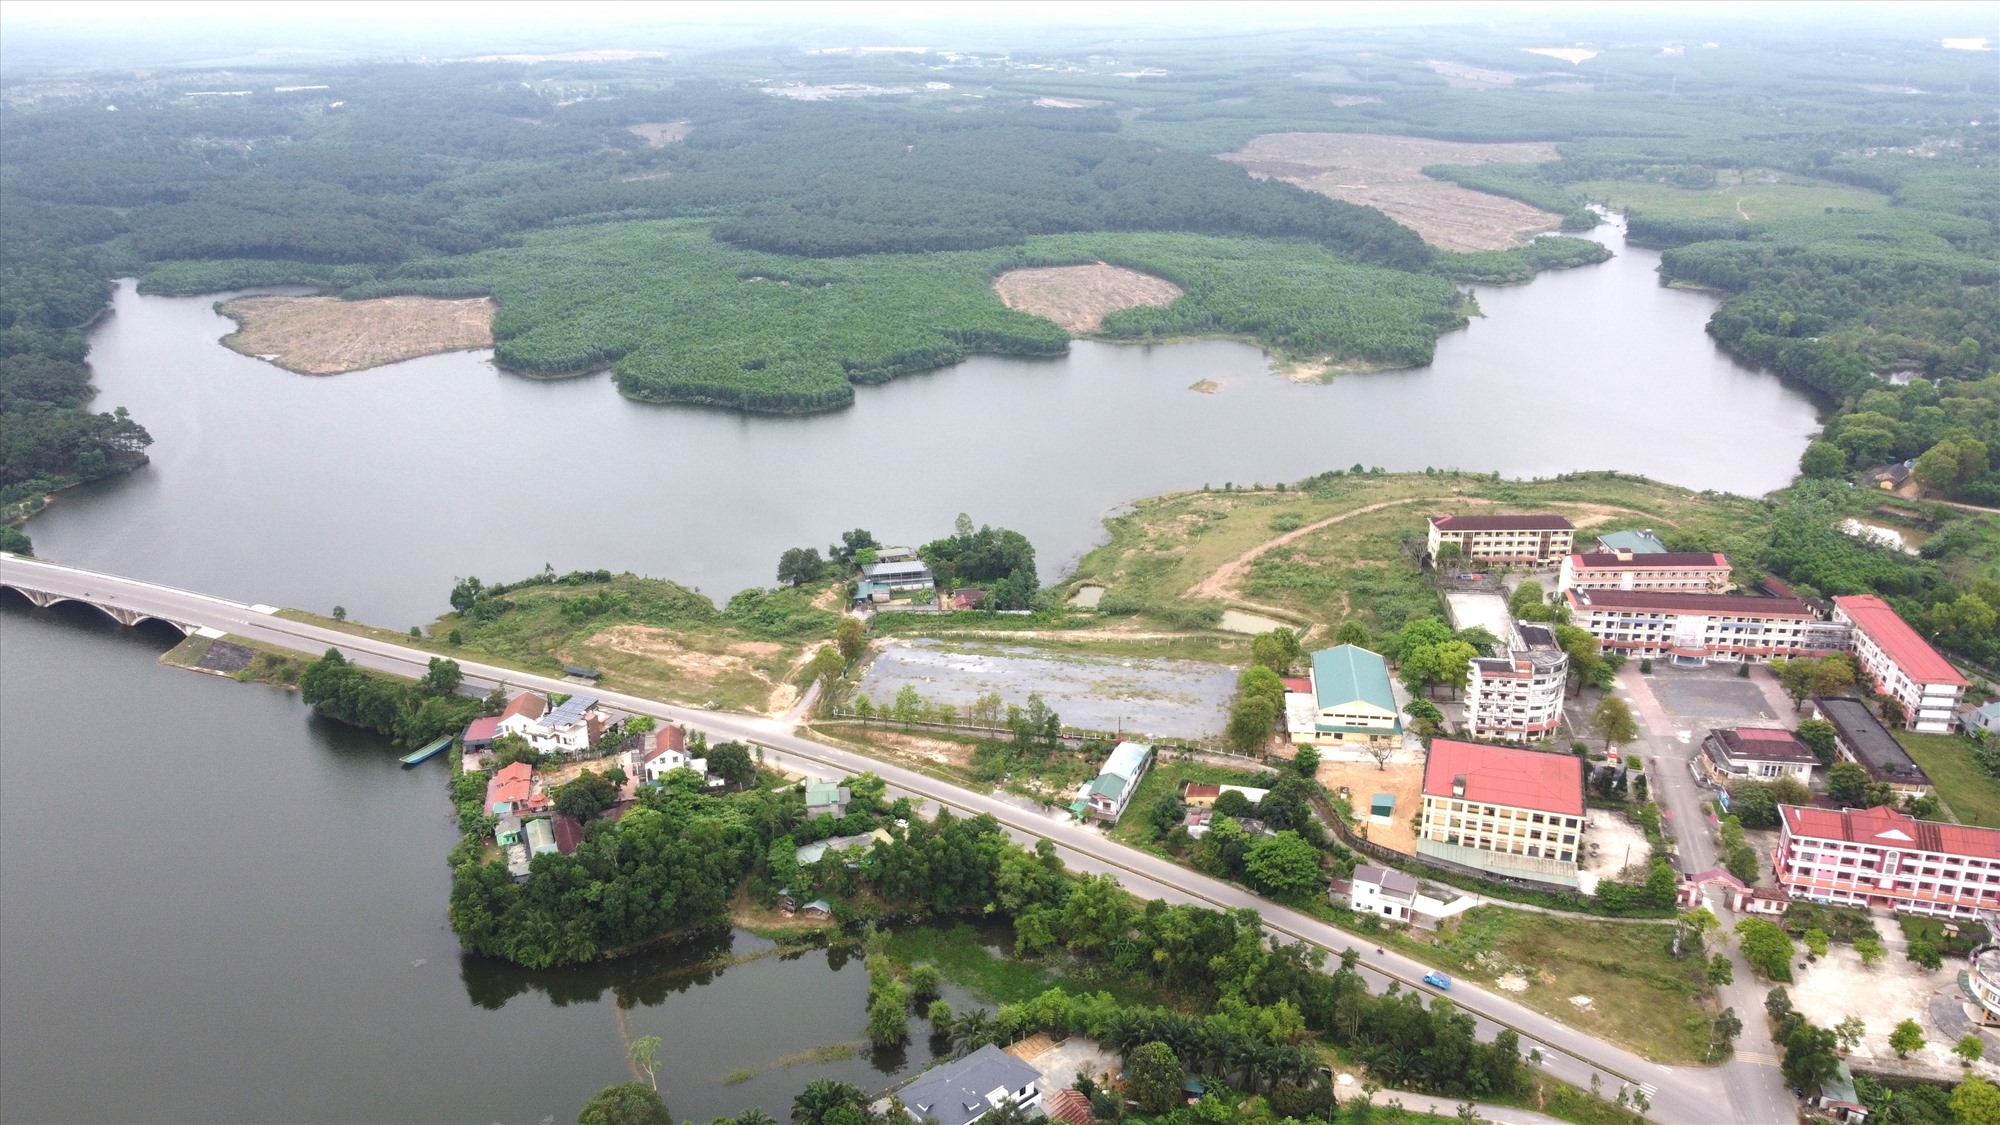 Quy hoạch phân khu Khu du lịch nghỉ dưỡng sinh thái hồ Khe Mây, Phường 3, thành phố Đông Hà bị đề nghị huỷ bỏ - Ảnh: V.P